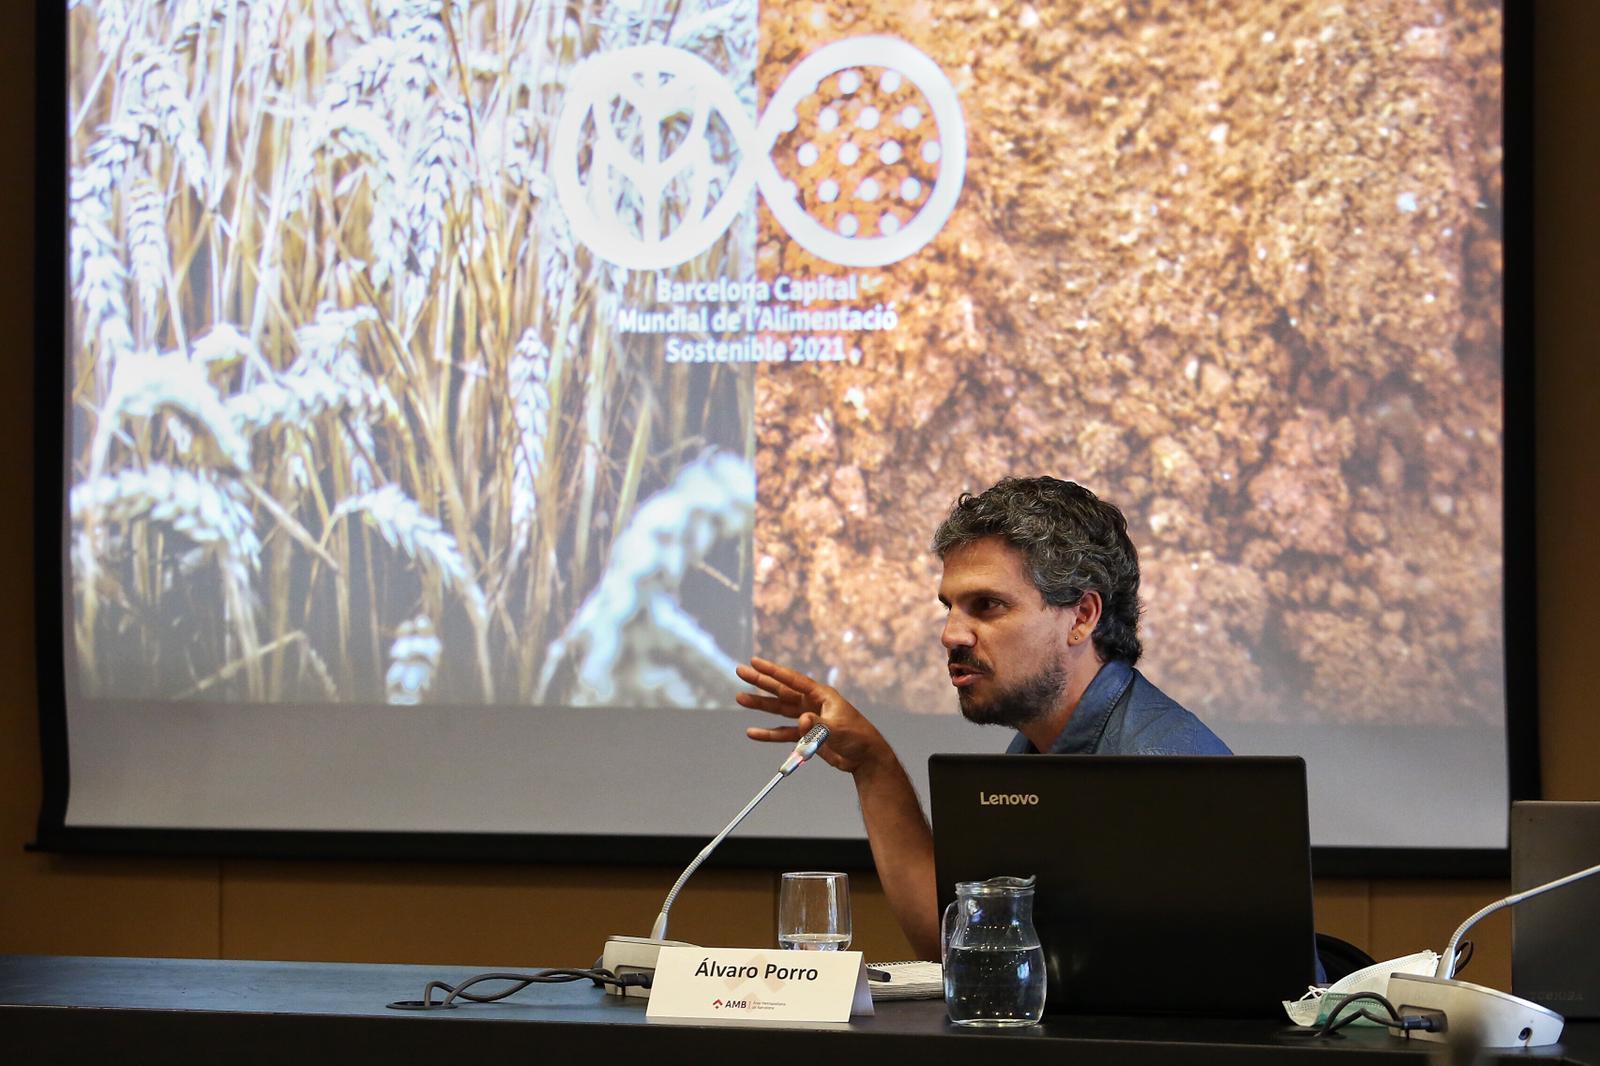 Álvaro Porro, comissionat d'Economia Social i Solidària durant la presentació de la Capital Mundial de la Alimentación Sostenible 2021. Foto: Pere Virigil